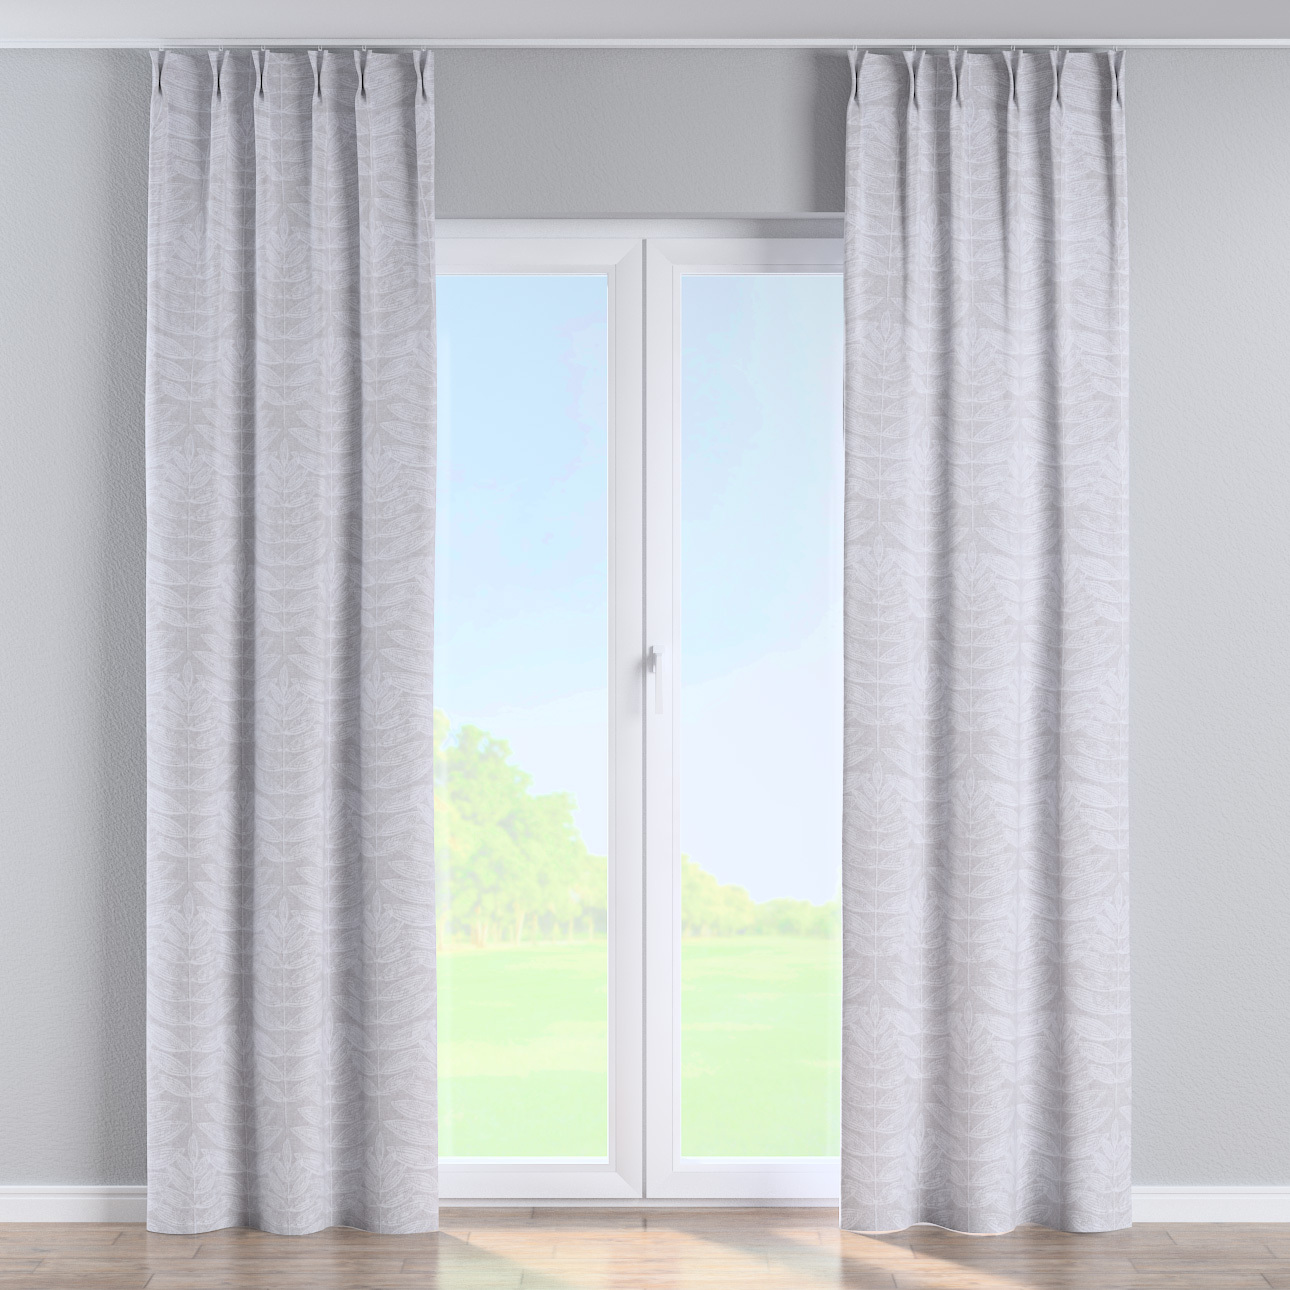 Vorhang mit flämischen 2-er Falten, weiß-grau, Sunny (143-84) günstig online kaufen